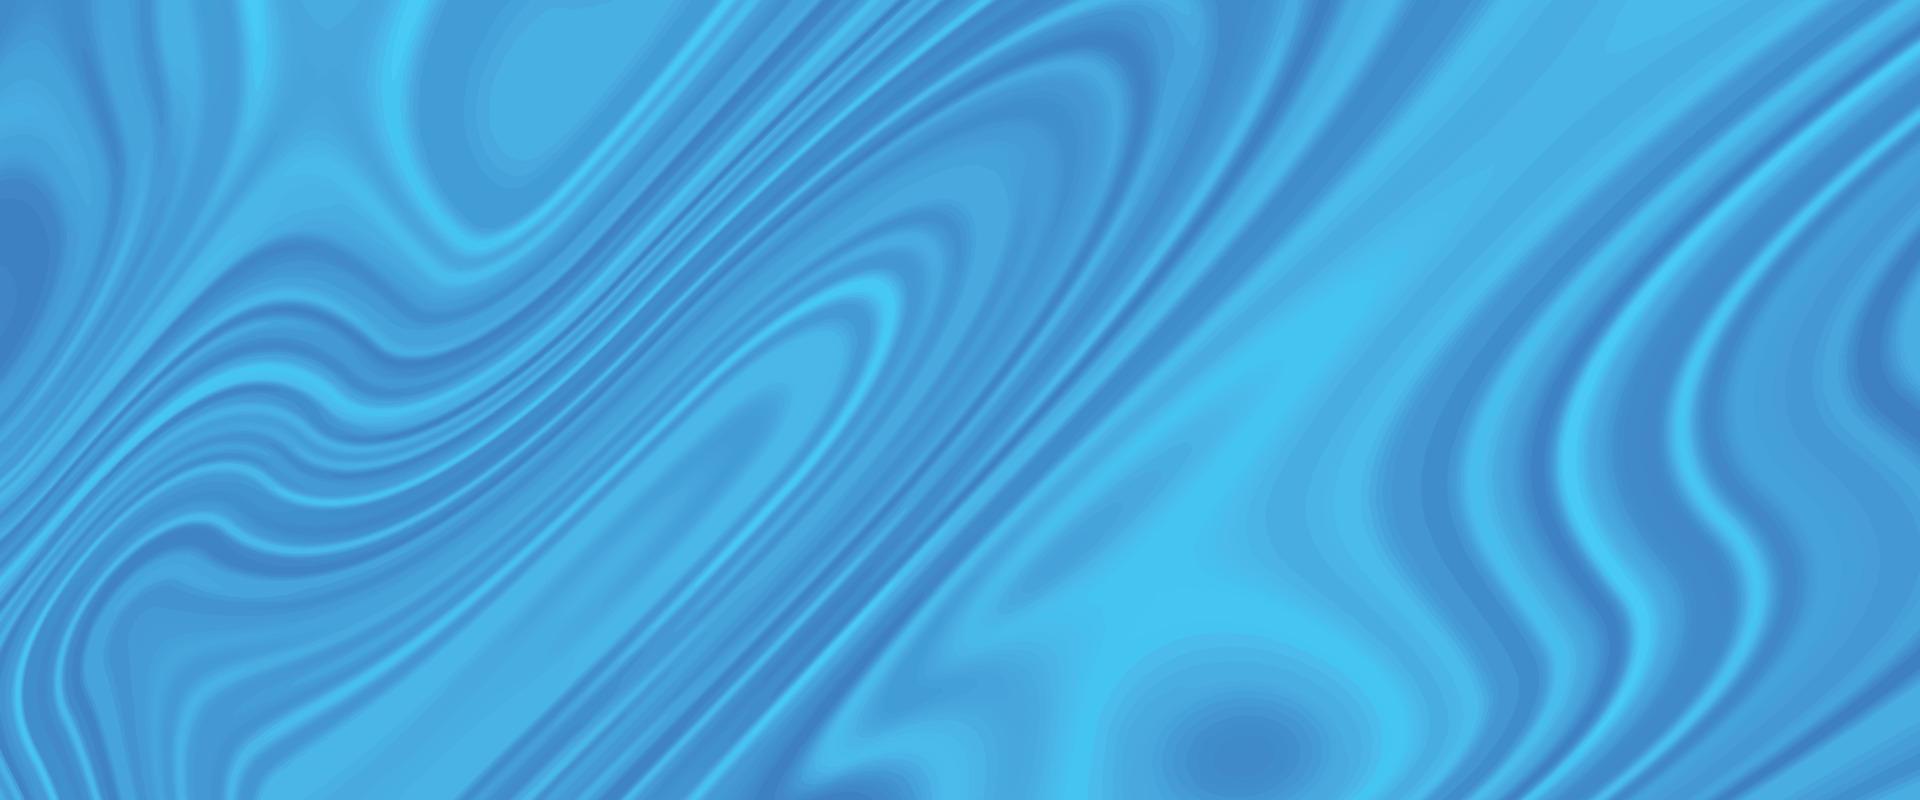 Neon Cyan abstrakter Hintergrund mit verflüssigtem Fluss. glänzende Textur aus flüssiger Acrylfarbe. abstrakter blauer Wellenflüssigkeits-Texturhintergrund. marmor strukturierter abstrakter königlicher hintergrund. vektor